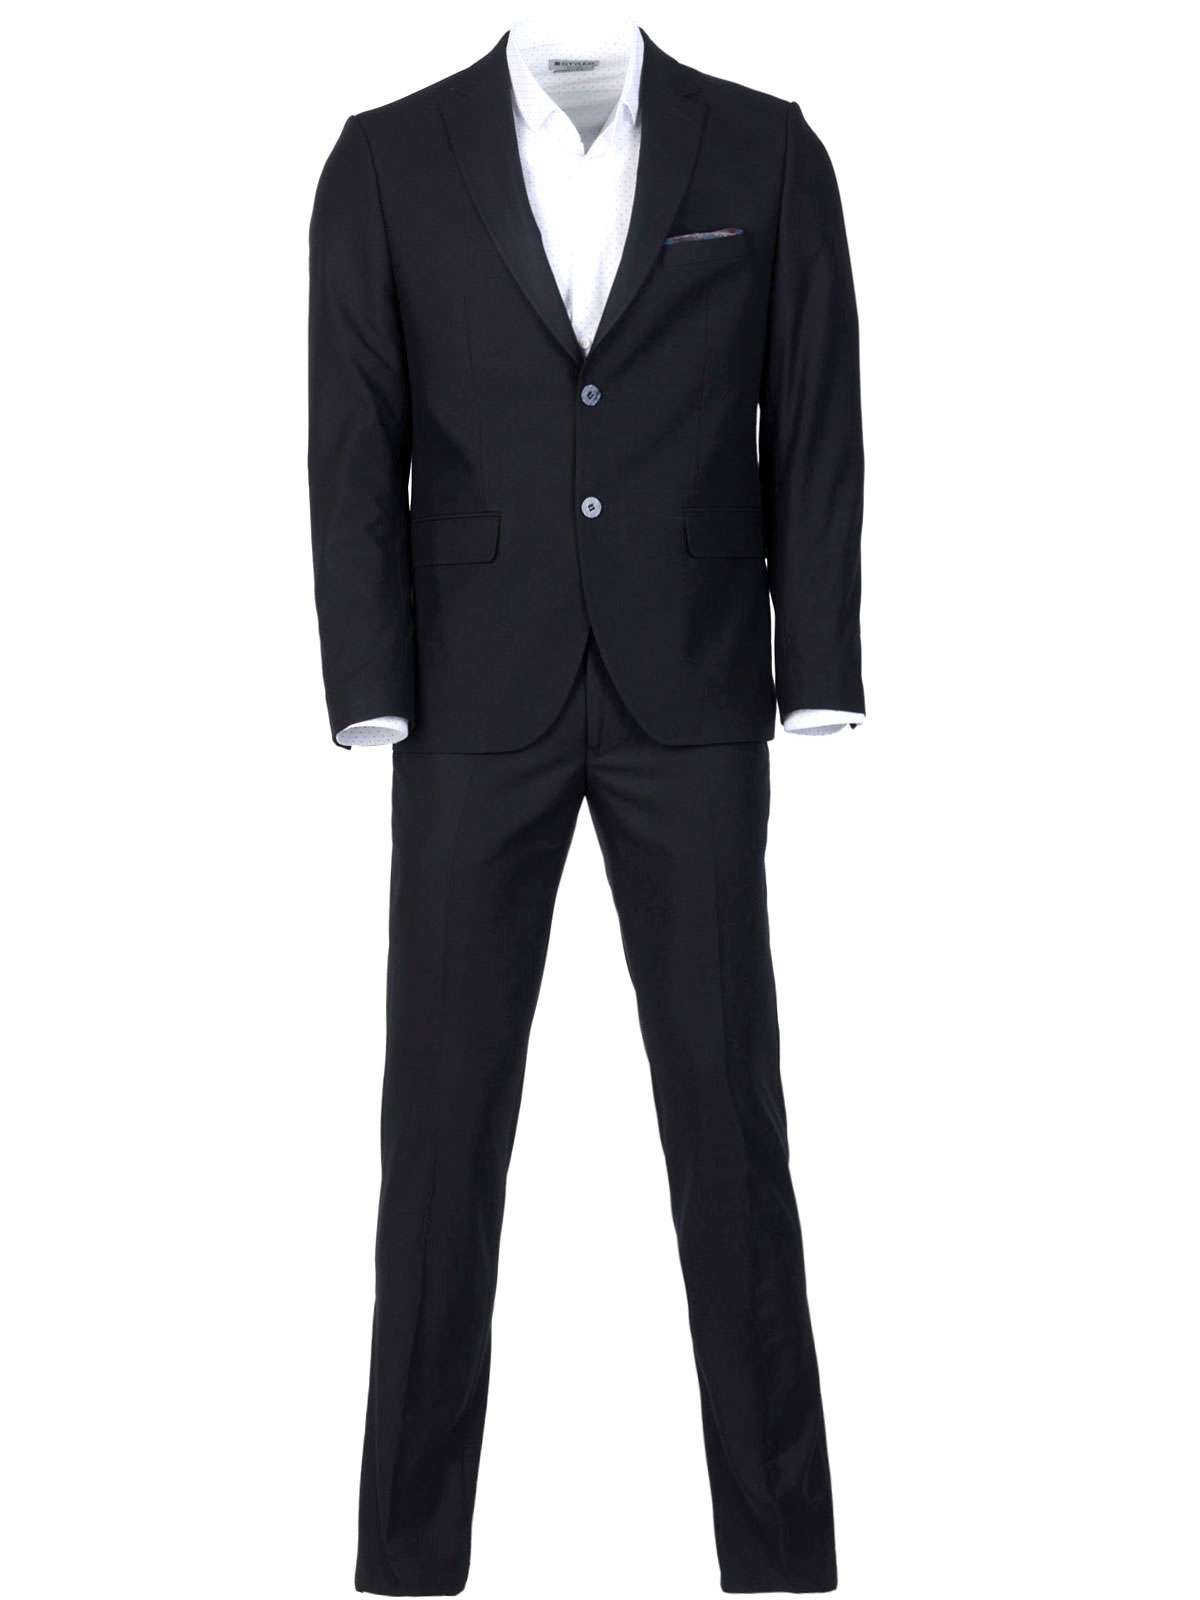 Κλασικό κοστούμι σε σκούρο μπλε - 68075 € 201.35 img2